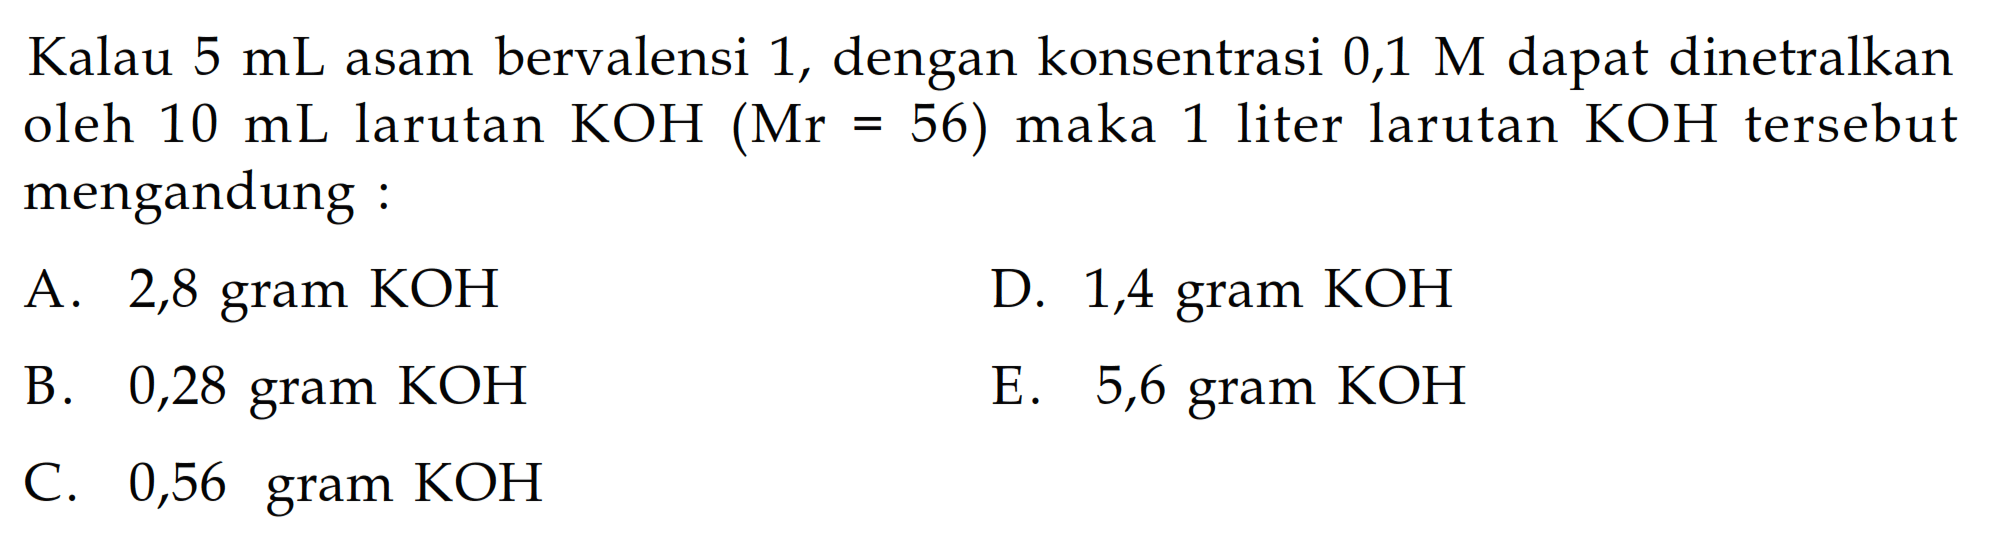 Kalau 5 mL asam bervalensi 1, dengan konsentrasi 0,1 M dapat dinetralkan oleh 10 mL larutan KOH(Mr=56) maka 1 liter larutan KOH tersebut mengandung :